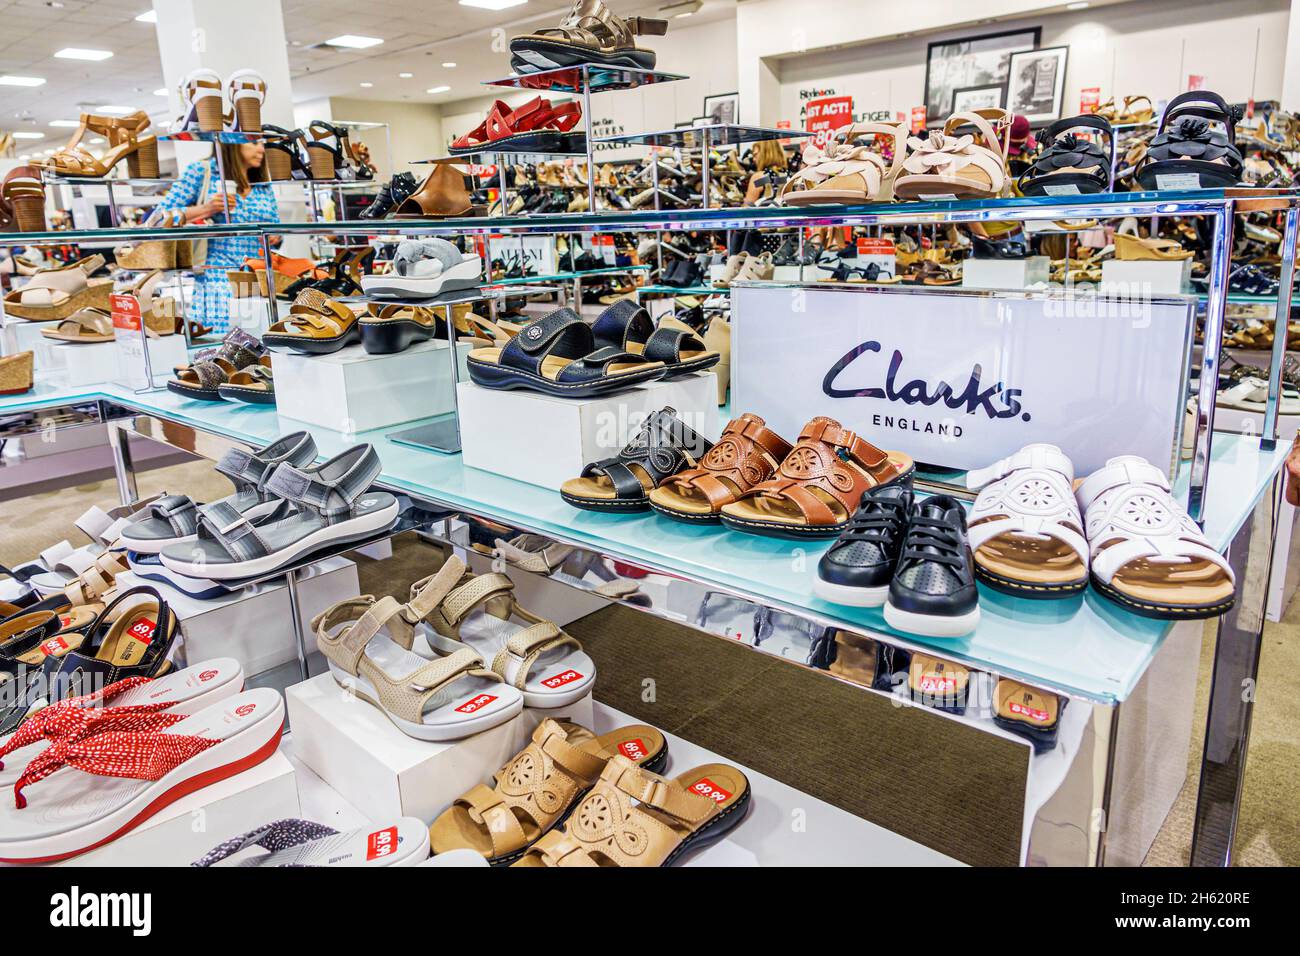 Jensen Beach Florida, Macy's Department Store, all'interno del mercato interno dello shopping che vende al dettaglio, scarpe da donna, esposizione di vendita di sandali Clarks Foto Stock